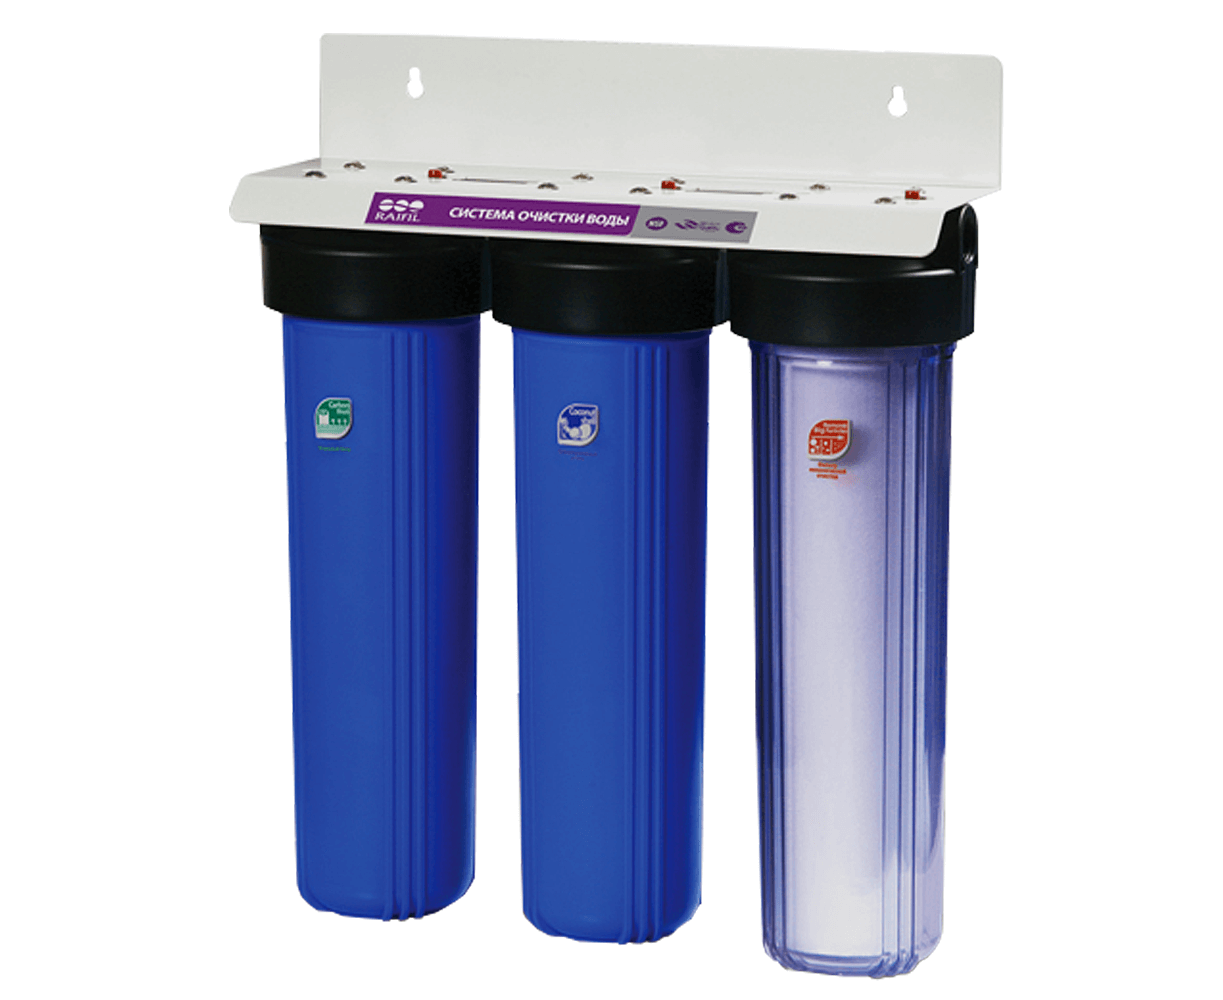 Фильтры для воды тольятти. Проточный фильтр RAIFIL PU 908b3-bk1-s-g. Магистральный фильтр bb20 АКВАВИК 1". Фильтр трехступенчатый RAIFIL для воды.